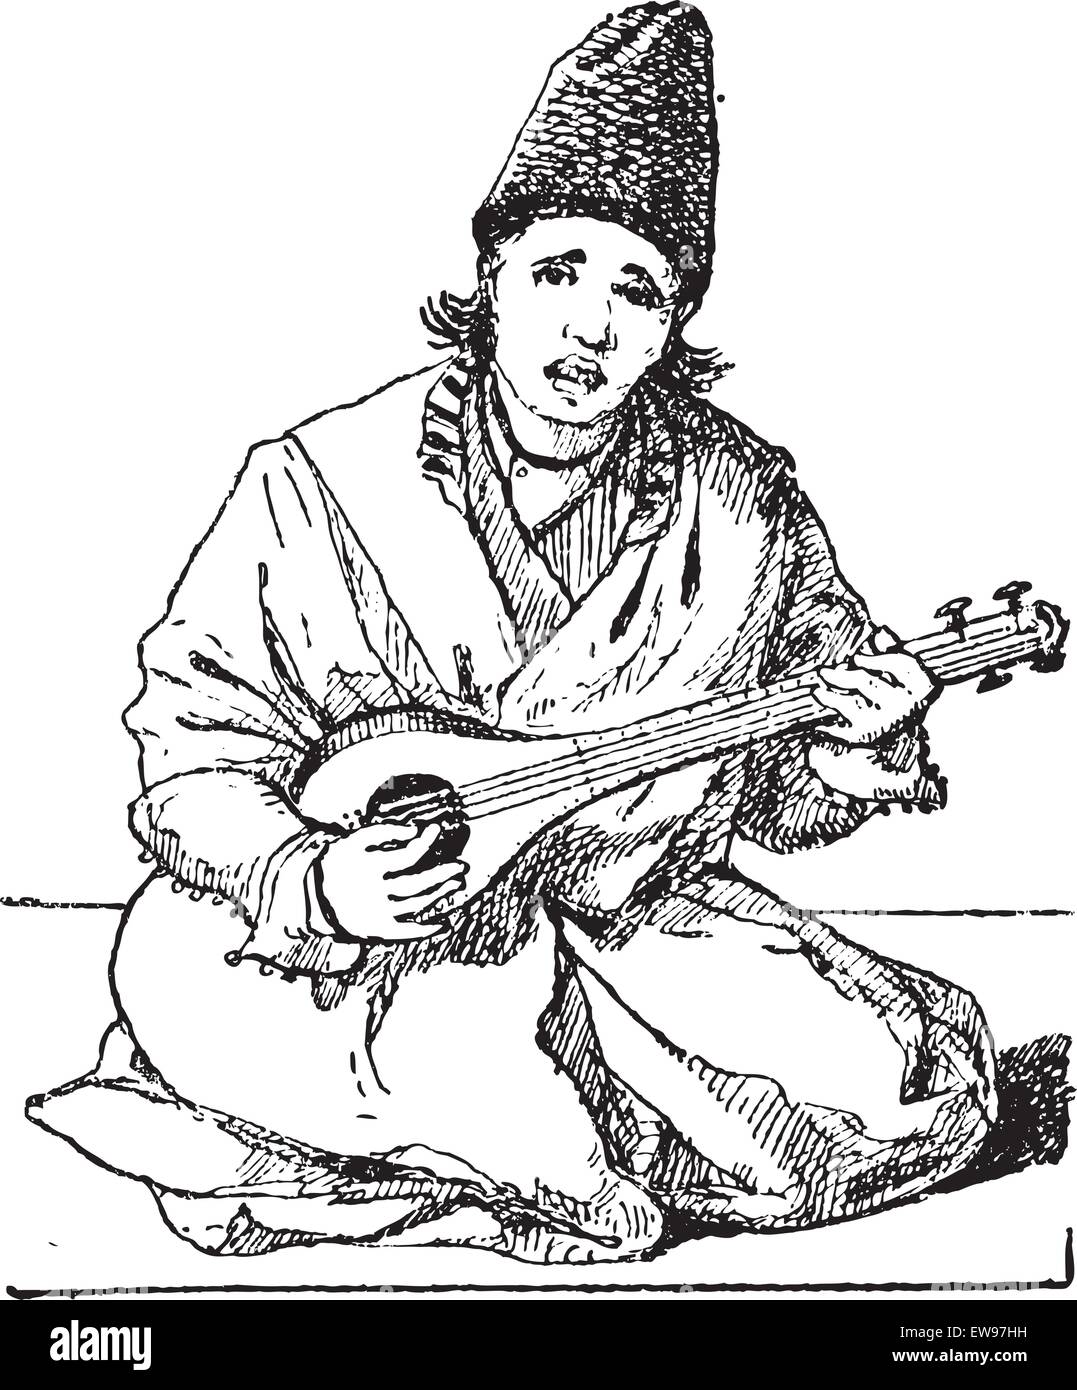 Alten gravierte Darstellung eines Mannes spielen Tar (Laute). Wörter und Sachen - Larive und Fleury Stock Vektor